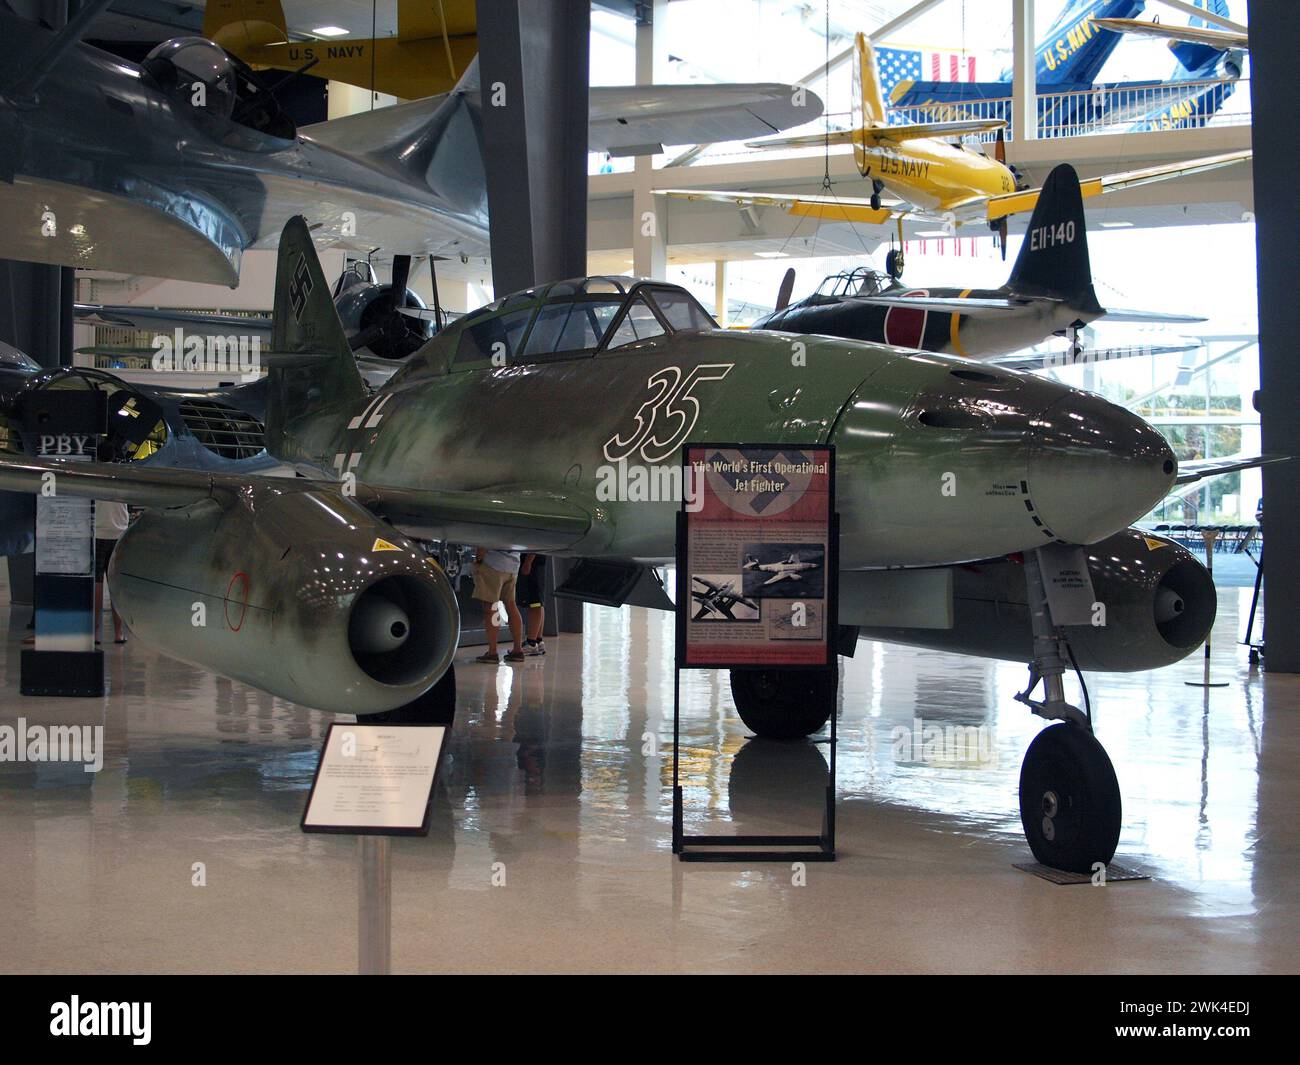 Pensacola, Floride, États-Unis - 10 août 2012 : avion de chasse de l'Allemagne nazie au Musée national de l'aviation navale. Banque D'Images